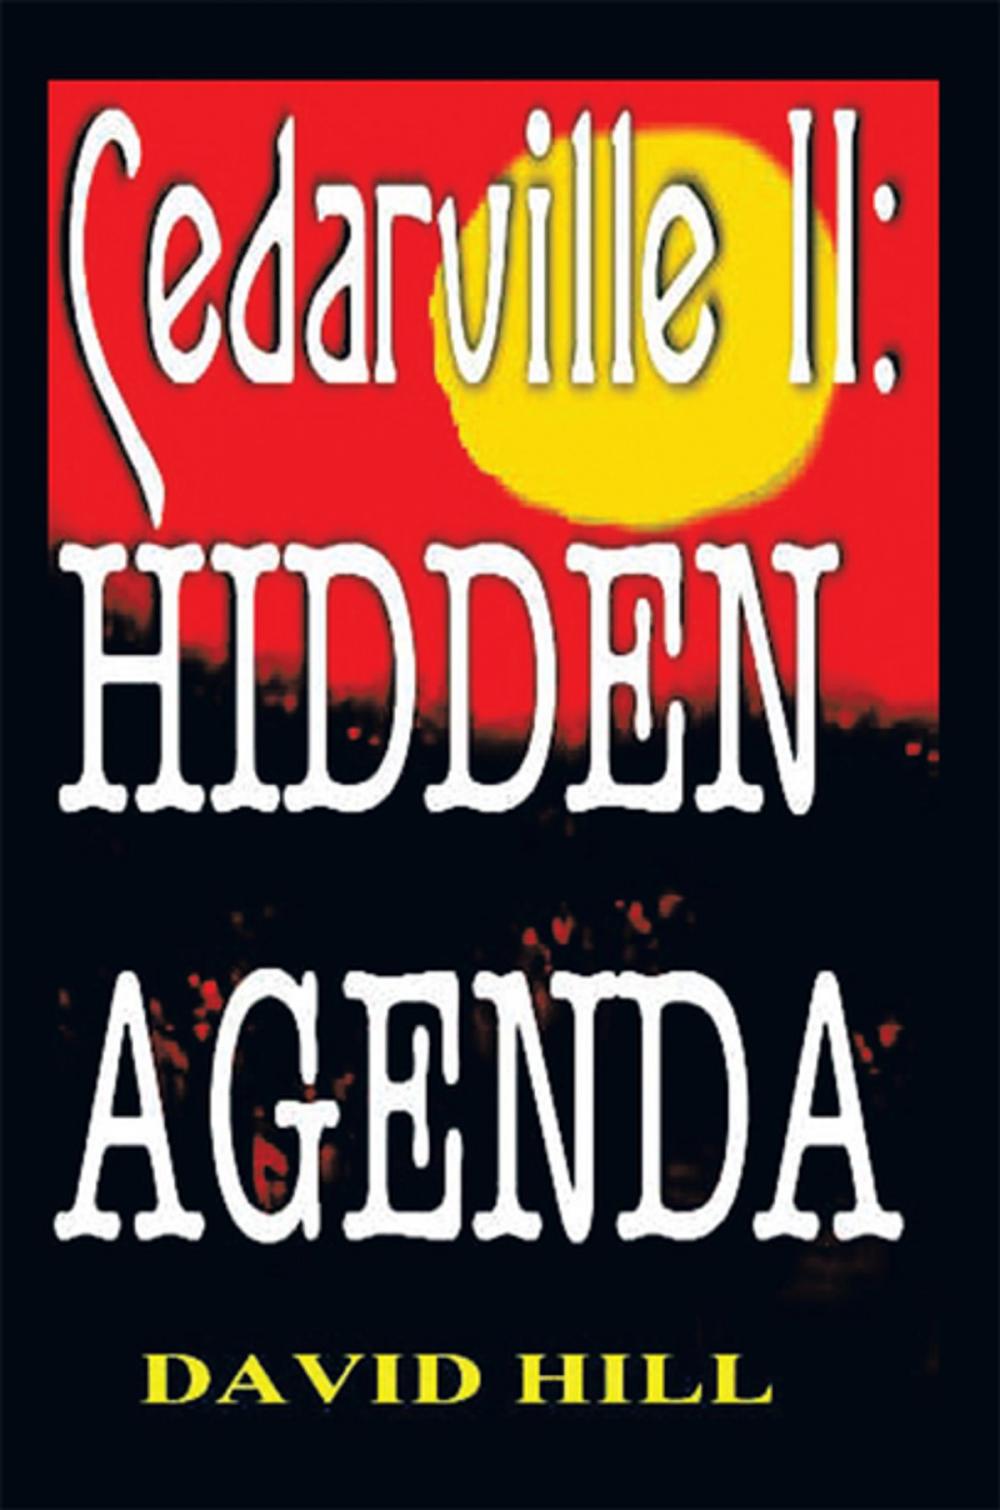 Big bigCover of Cedarville Ii: Hidden Agenda